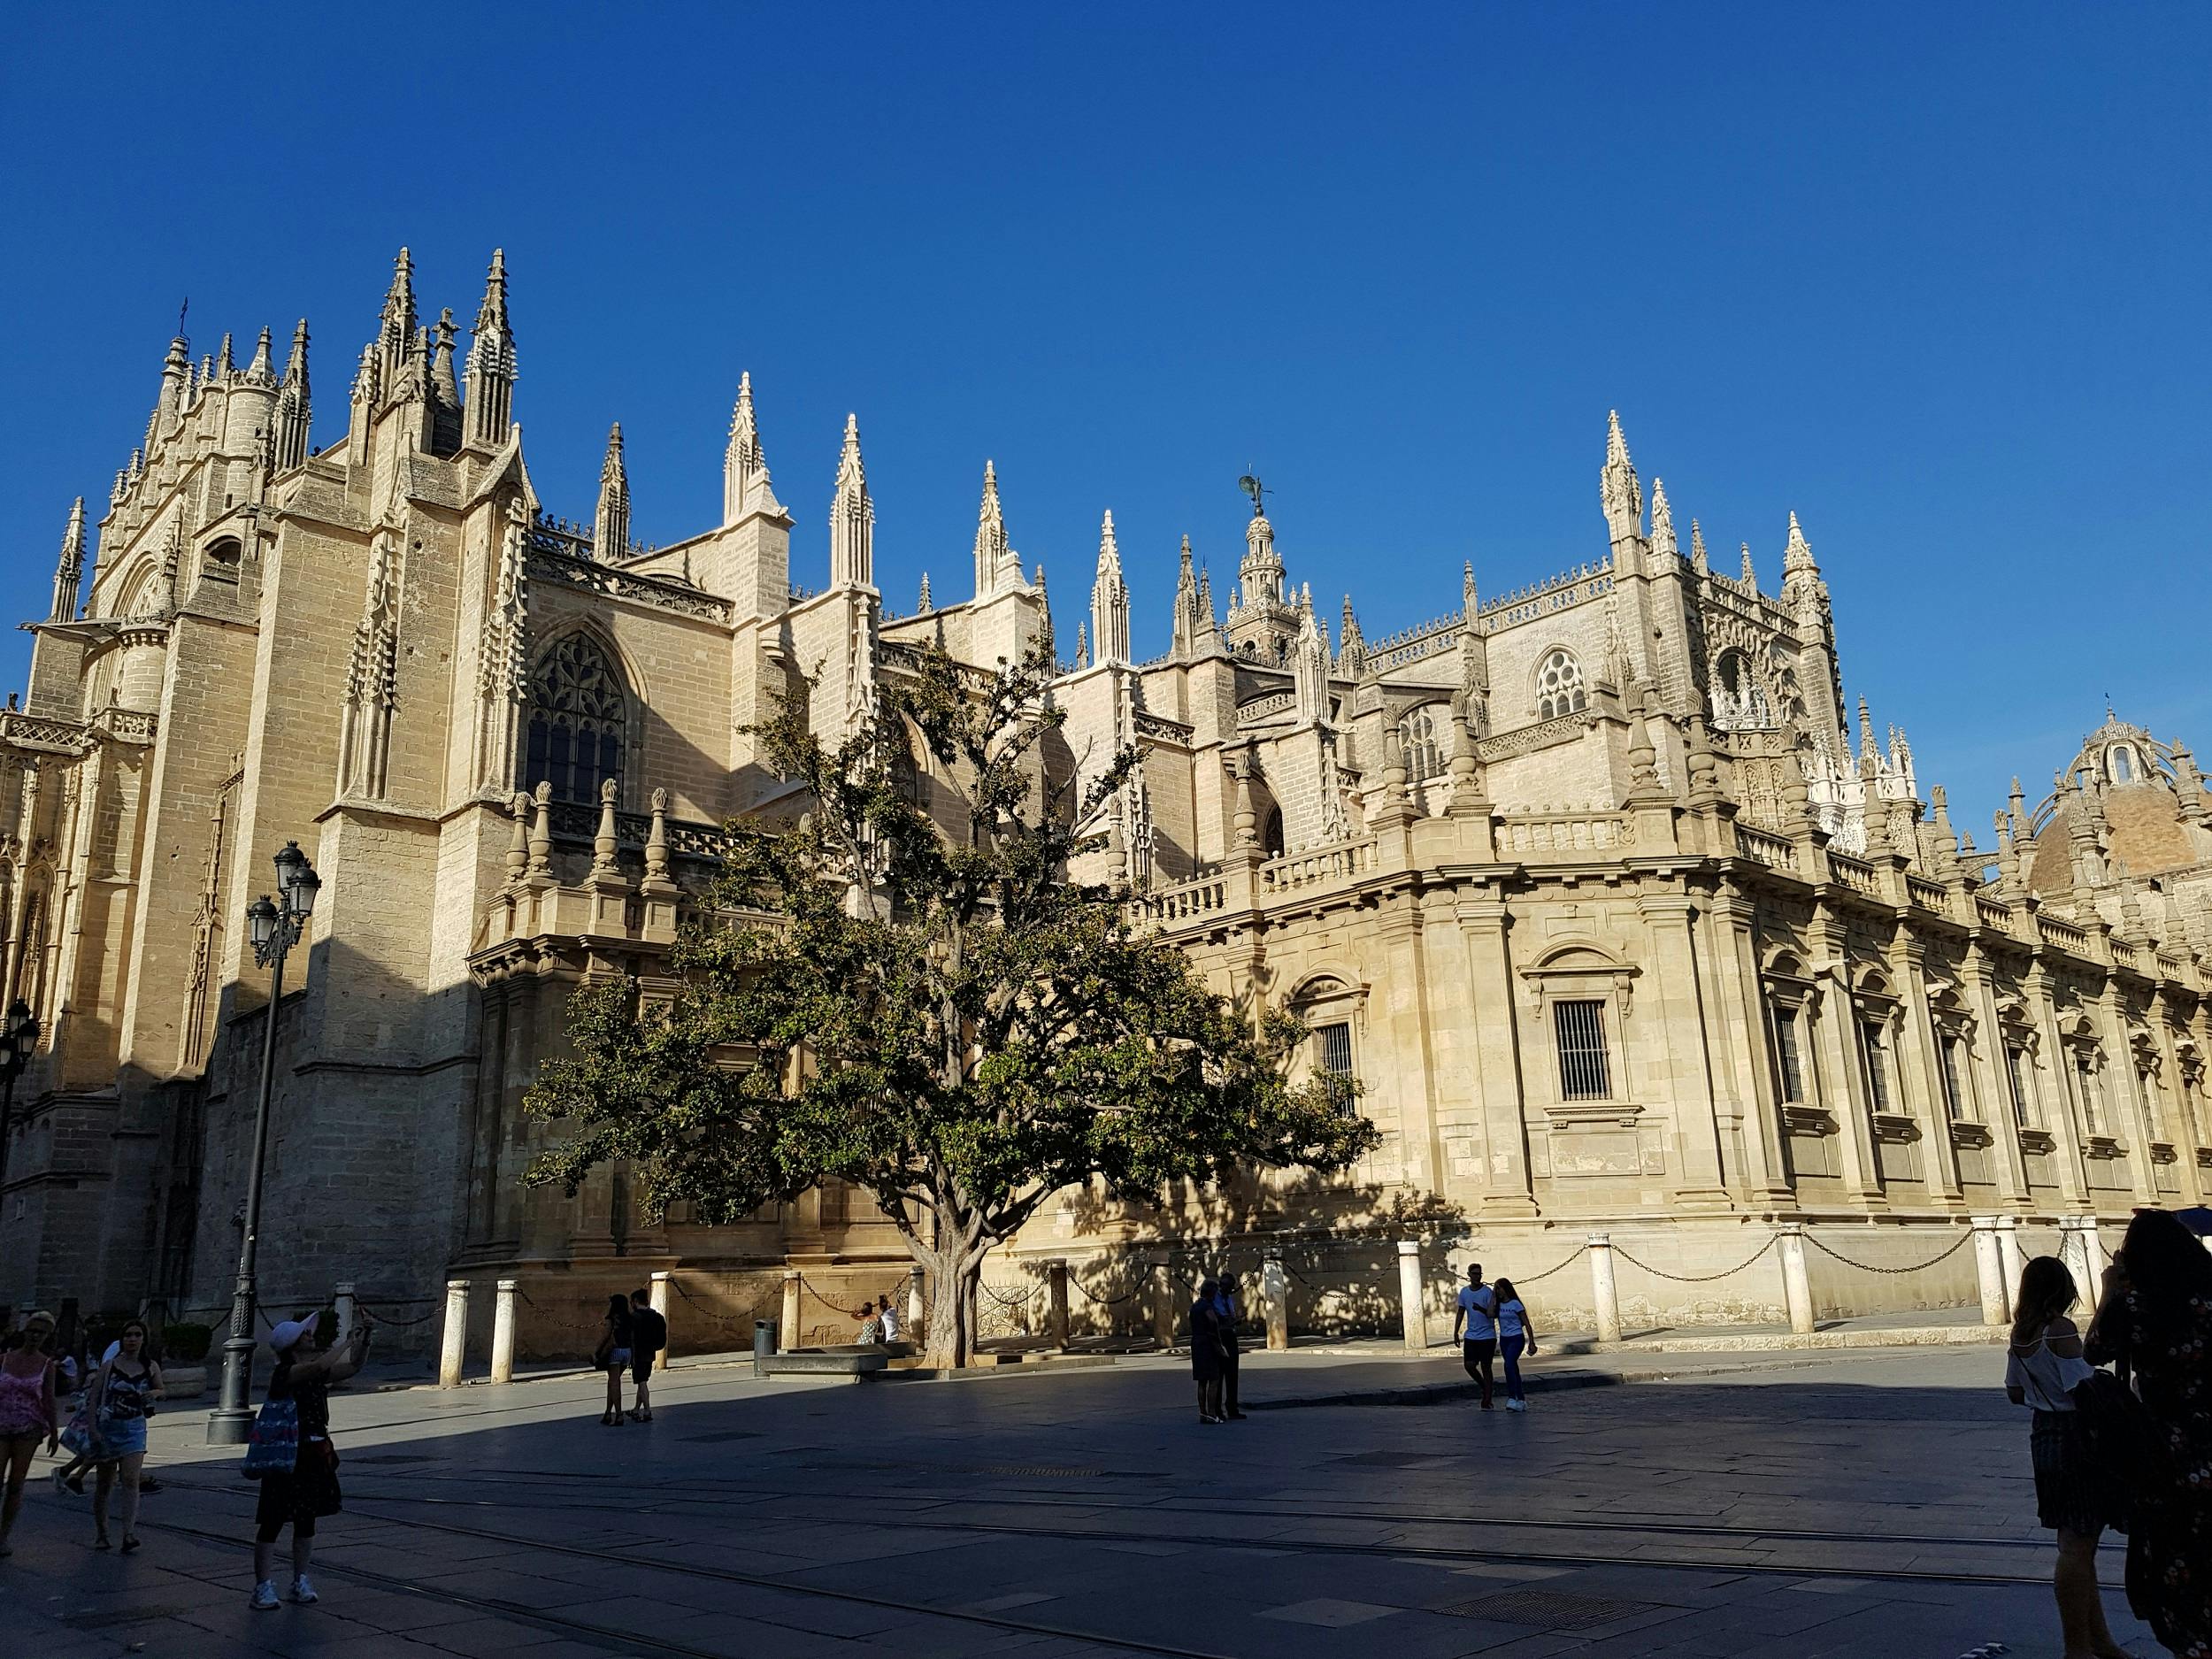 Sevilla Alcázar en rondleiding door de kathedraal met toegangskaarten met voorrang